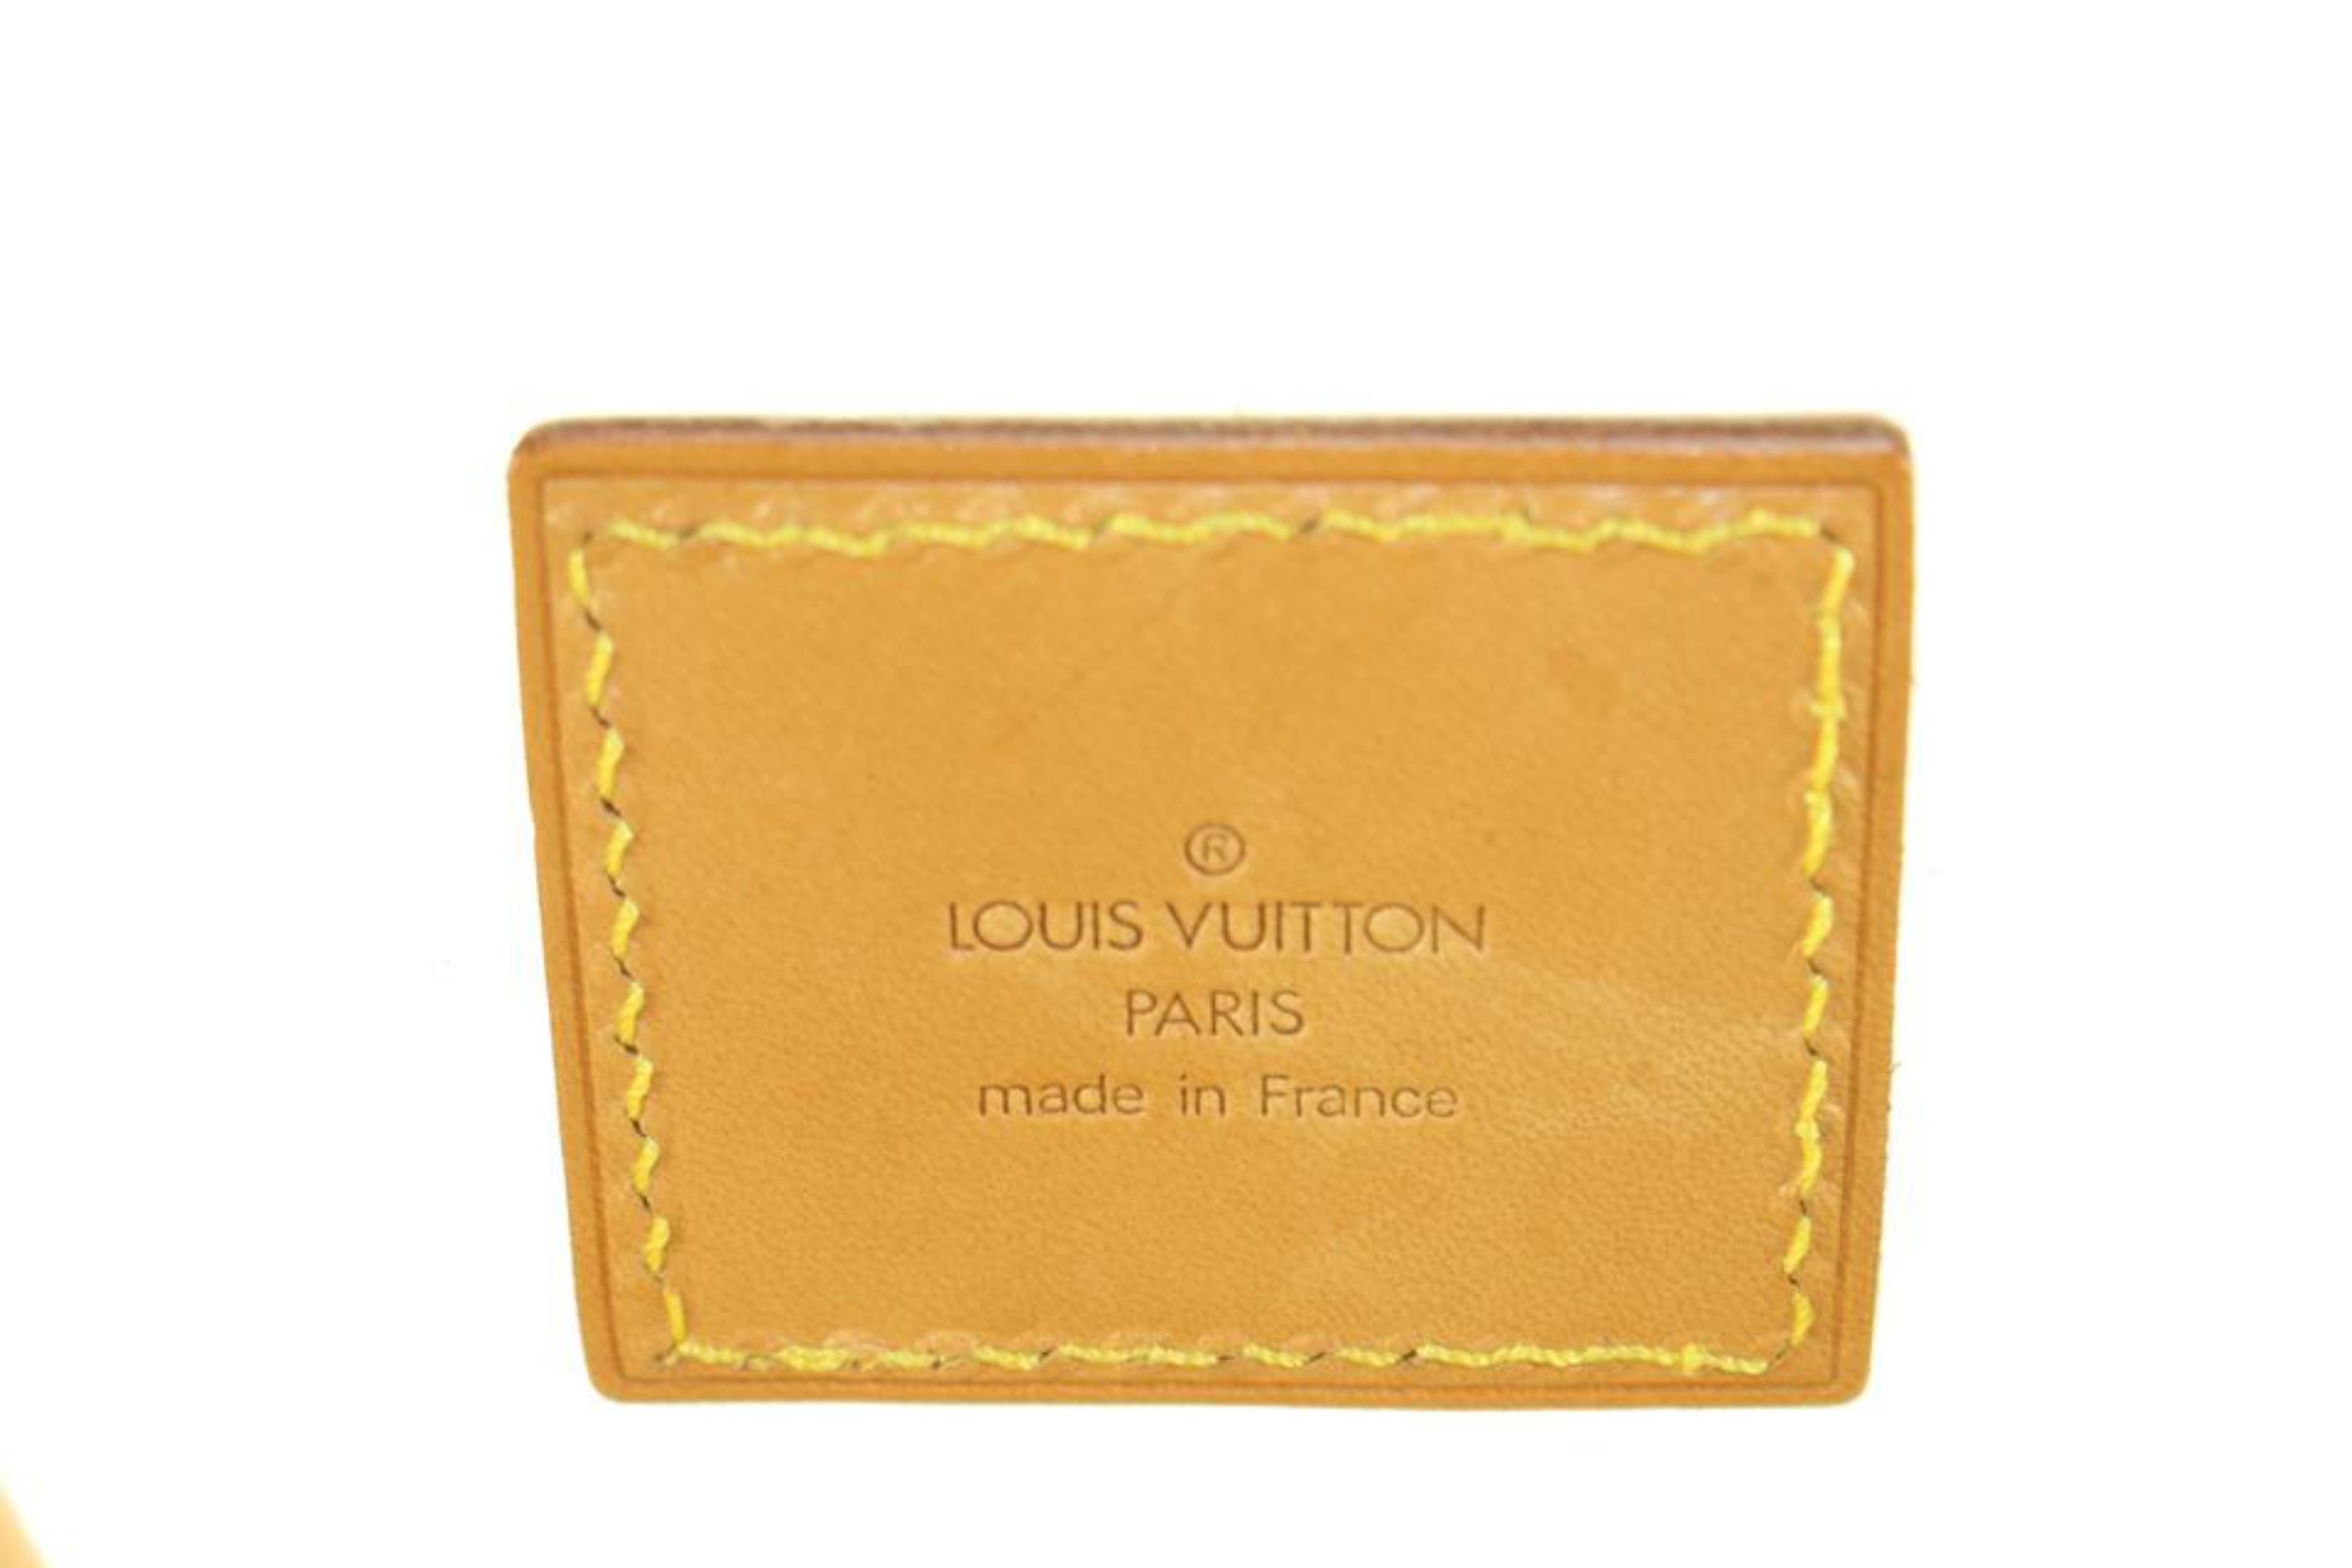 Louis Vuitton Runway 100th Anniversary Isaac Mizrahi 1996 Clear Tote Bag 18lu720 For Sale 3